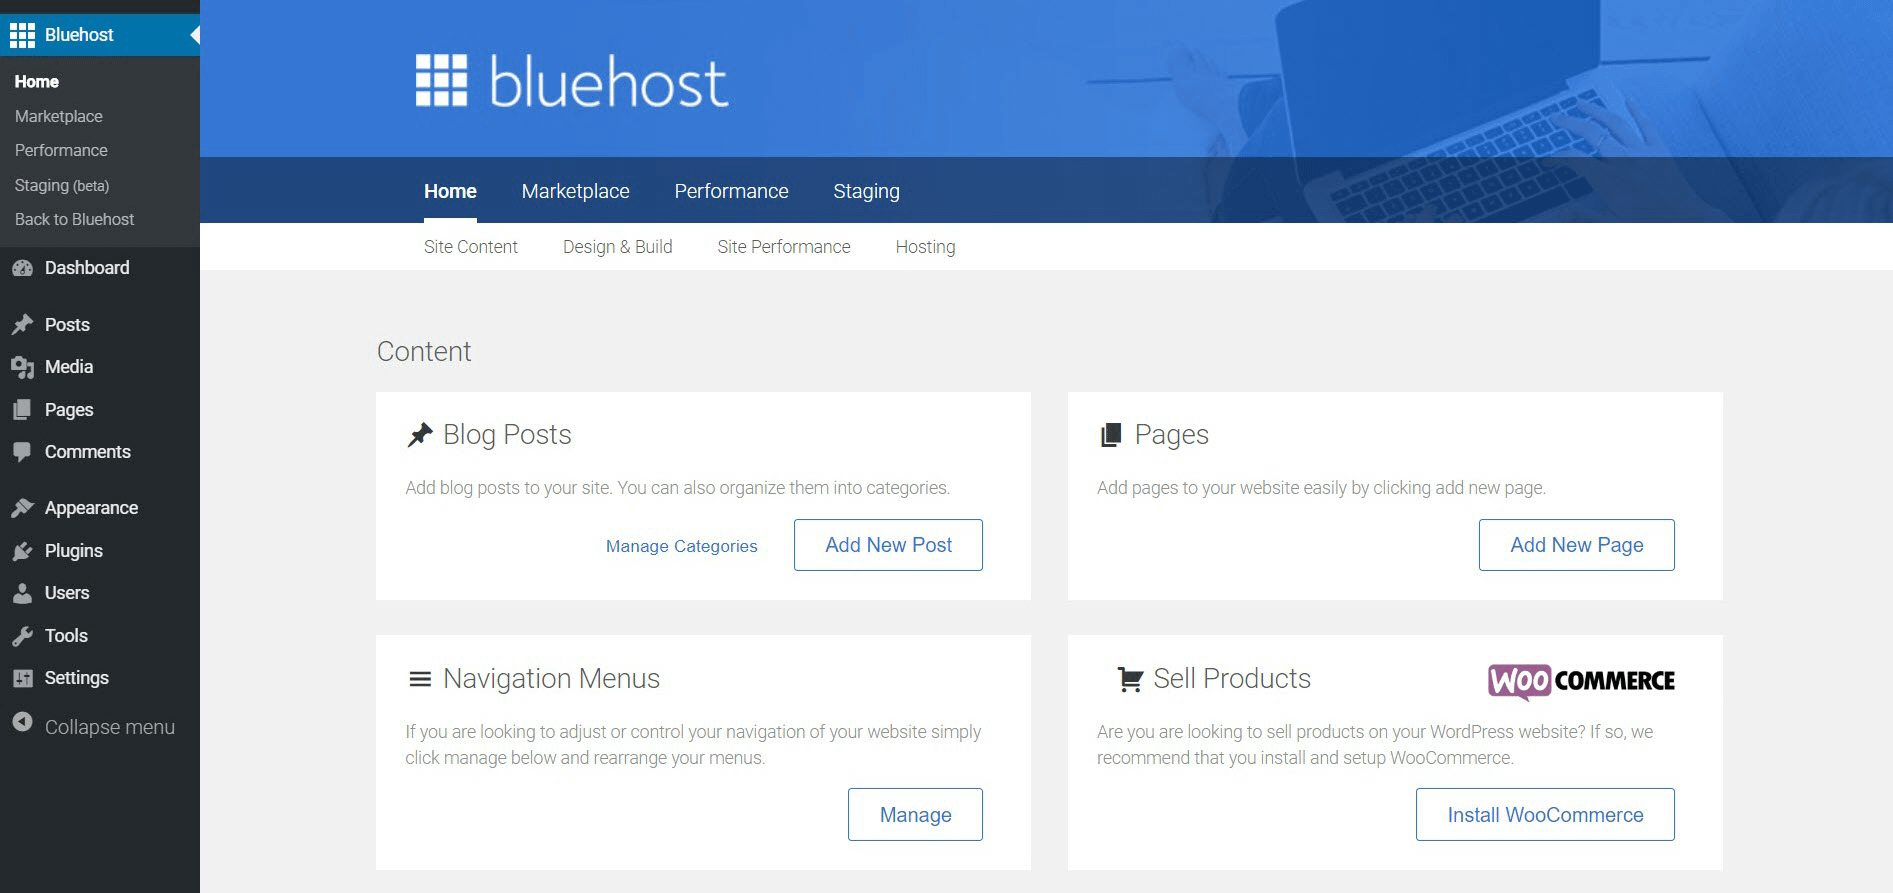 Bluehost site management tools vs Namecheap